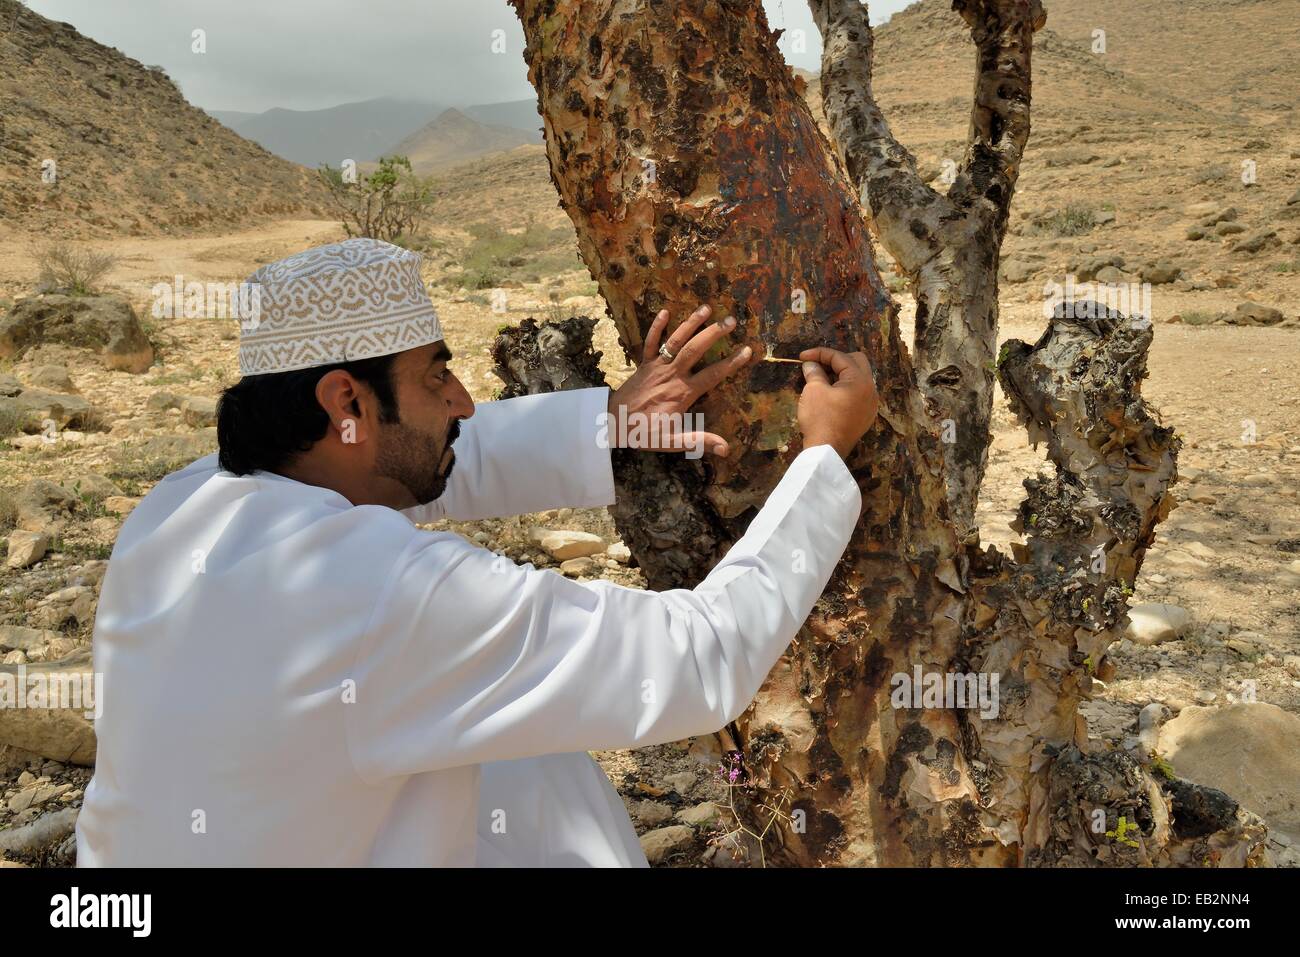 Hombre local la recolección de la Resina preciosa de un árbol de incienso (Boswellia sacra), cerca de la región de Dhofar, Mughsayl, Orient, Omán Foto de stock